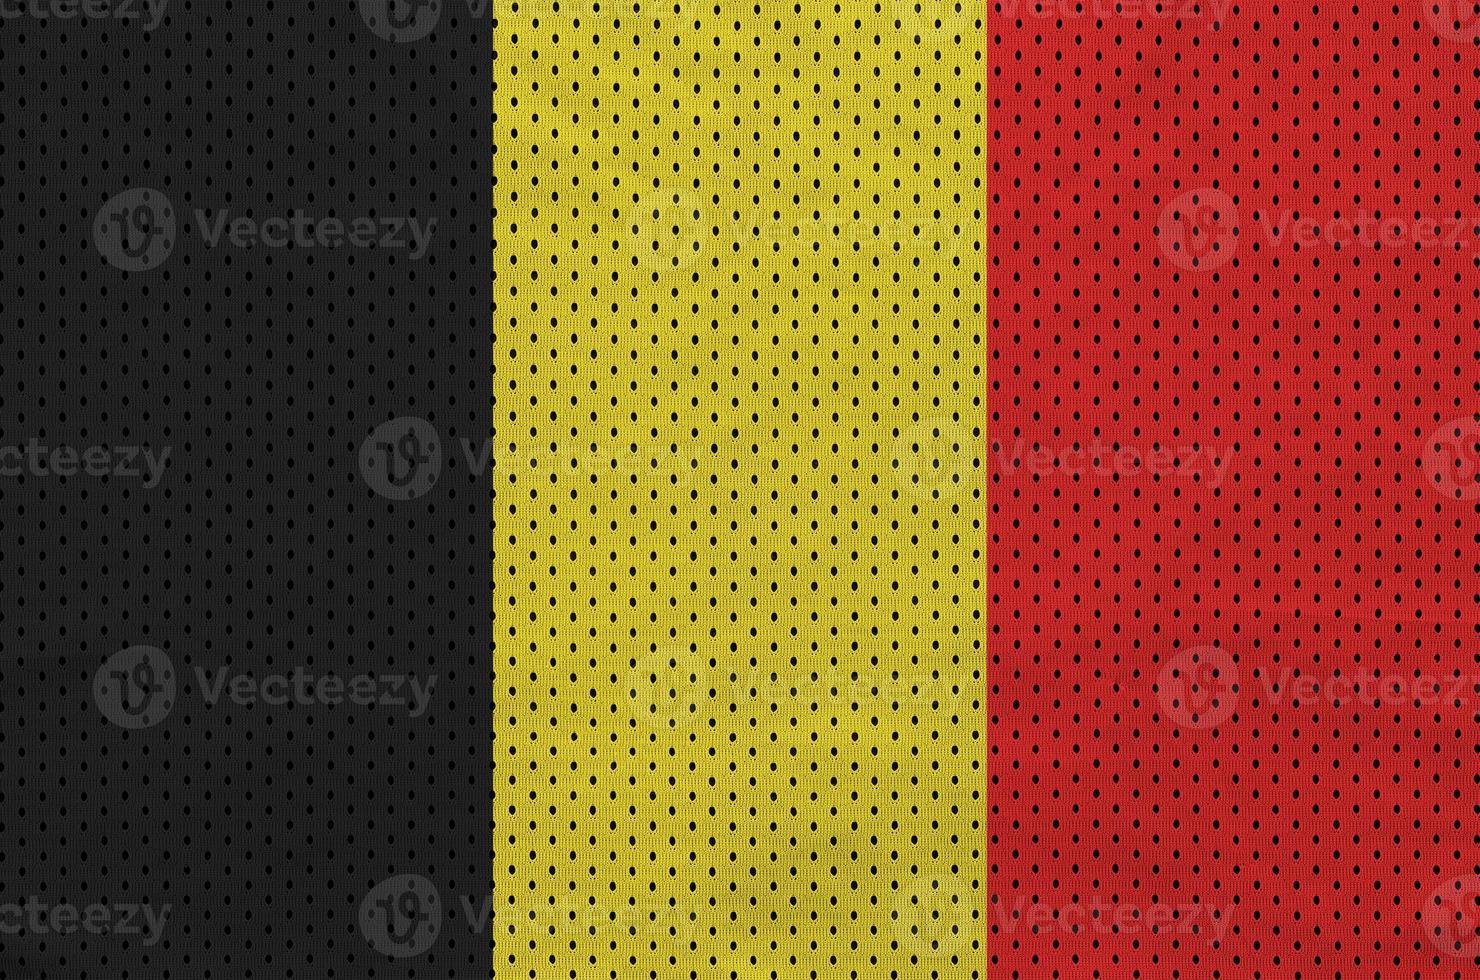 belgien flagga tryckt på en polyester nylon- sportkläder maska tyg foto